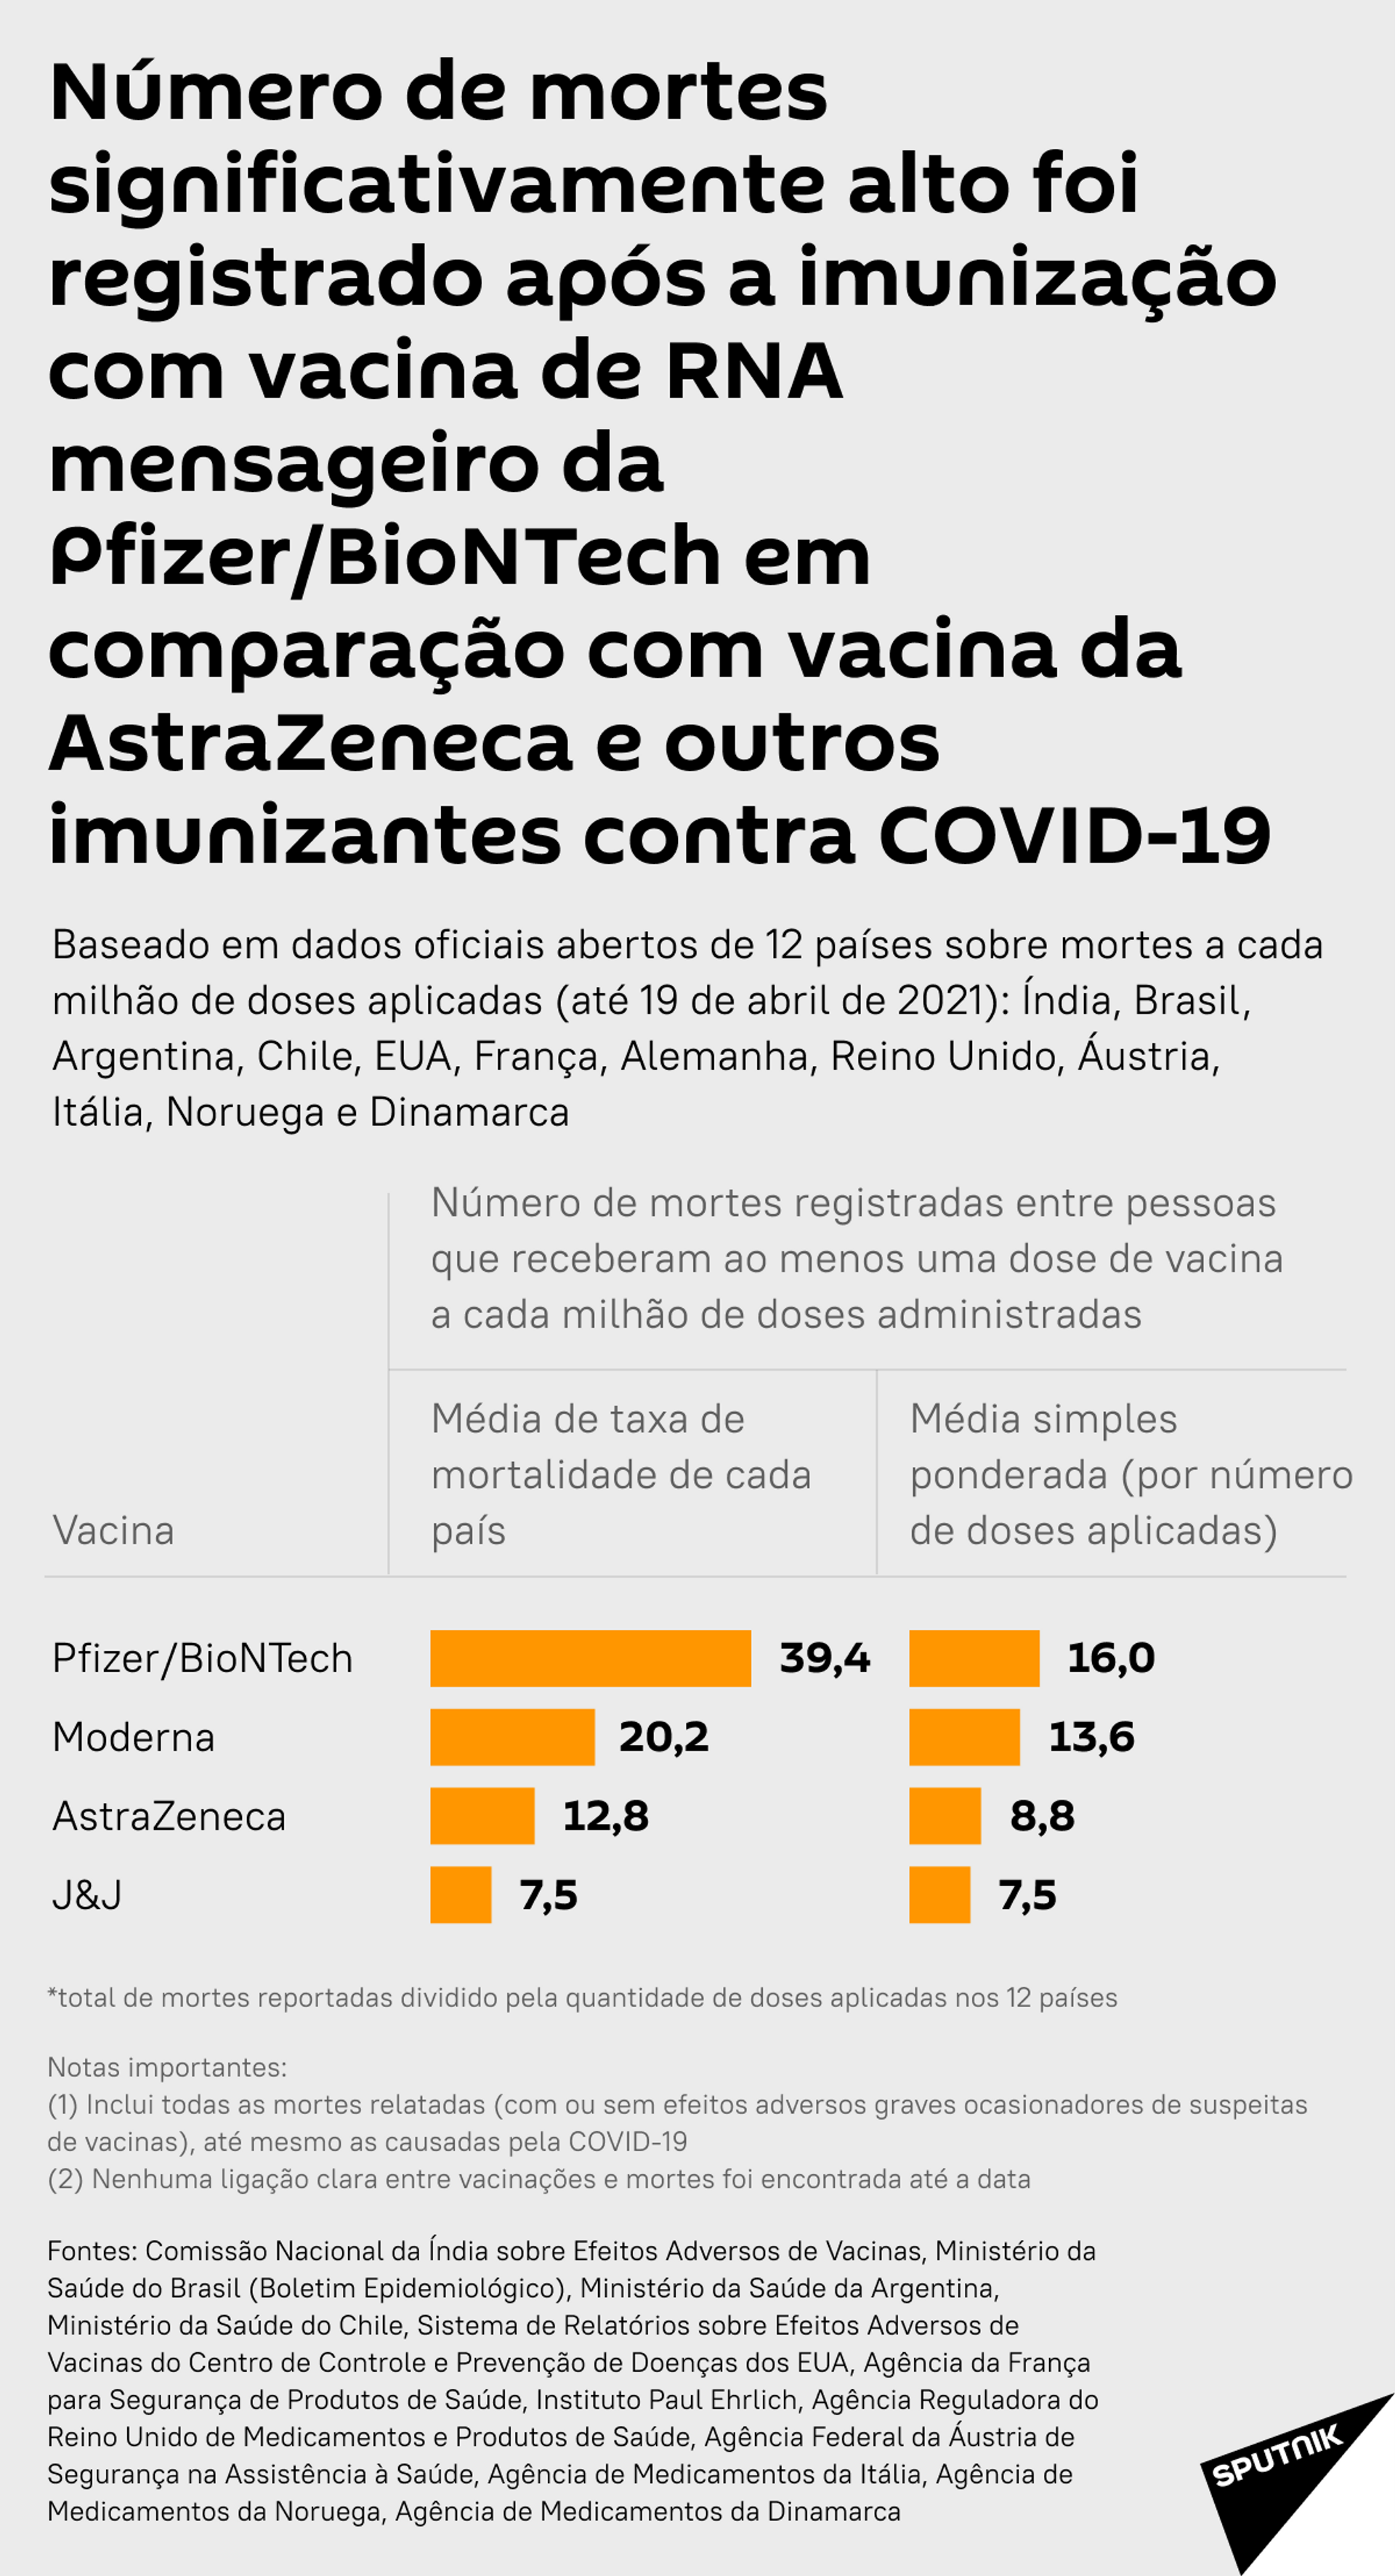 Pfizer mira silenciosamente outras vacinas, enquanto preserva seu próprio registro de segurança? - Sputnik Brasil, 1920, 23.04.2021